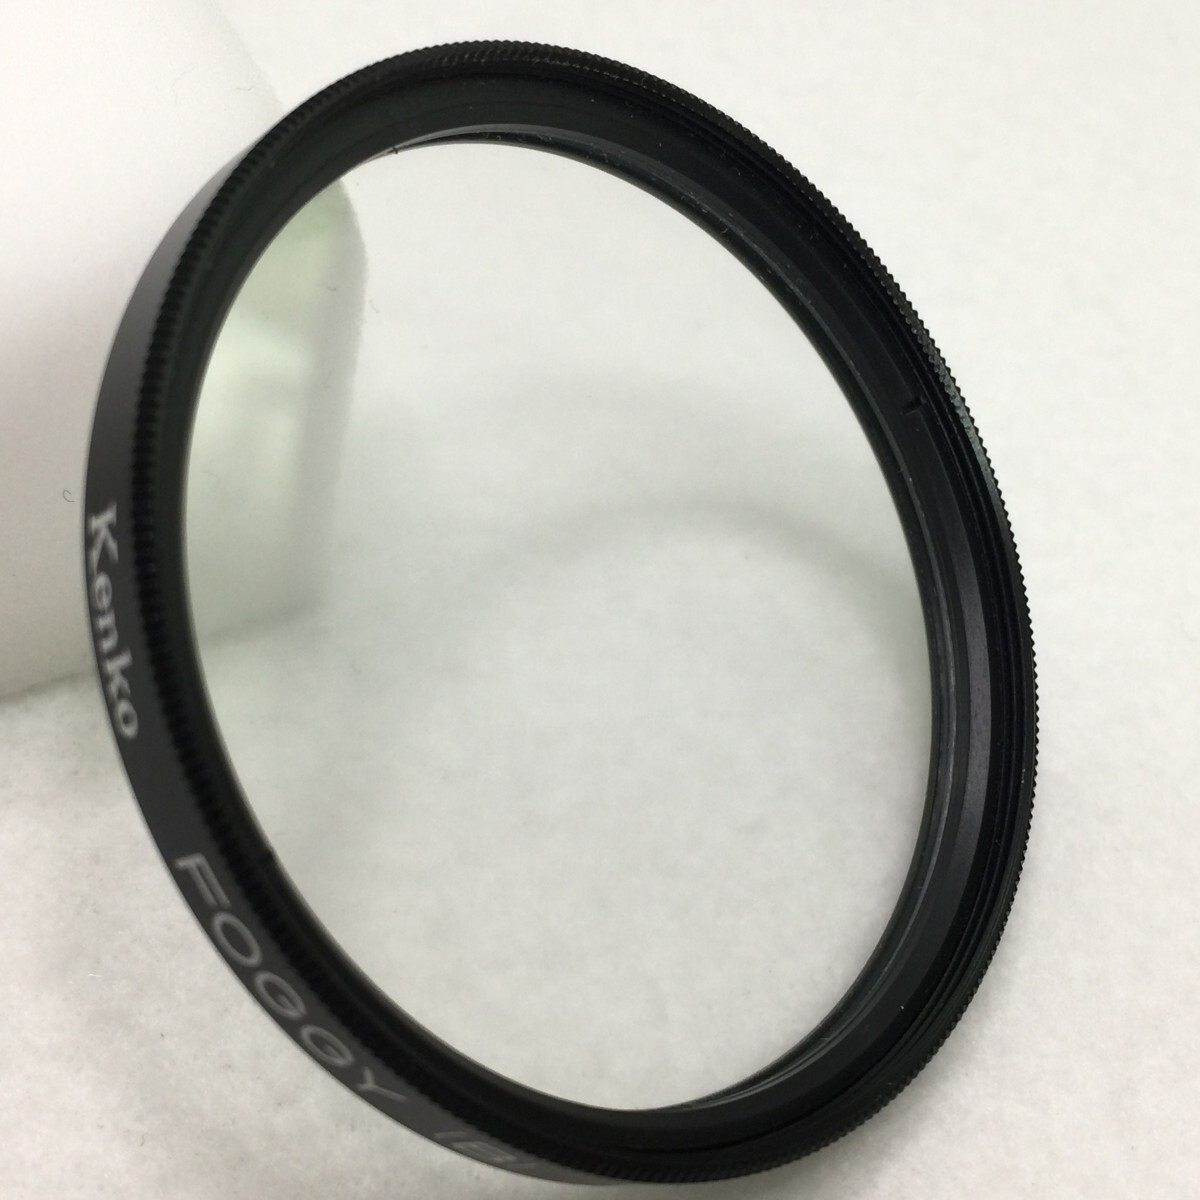 Kenko FOGGY(B) 52mm soft фильтр крошечный фильтр стекло поверхность обработка широкоугольный взгляд издалека эффект. сильный (B) модель текущее состояние товар | 03-00352